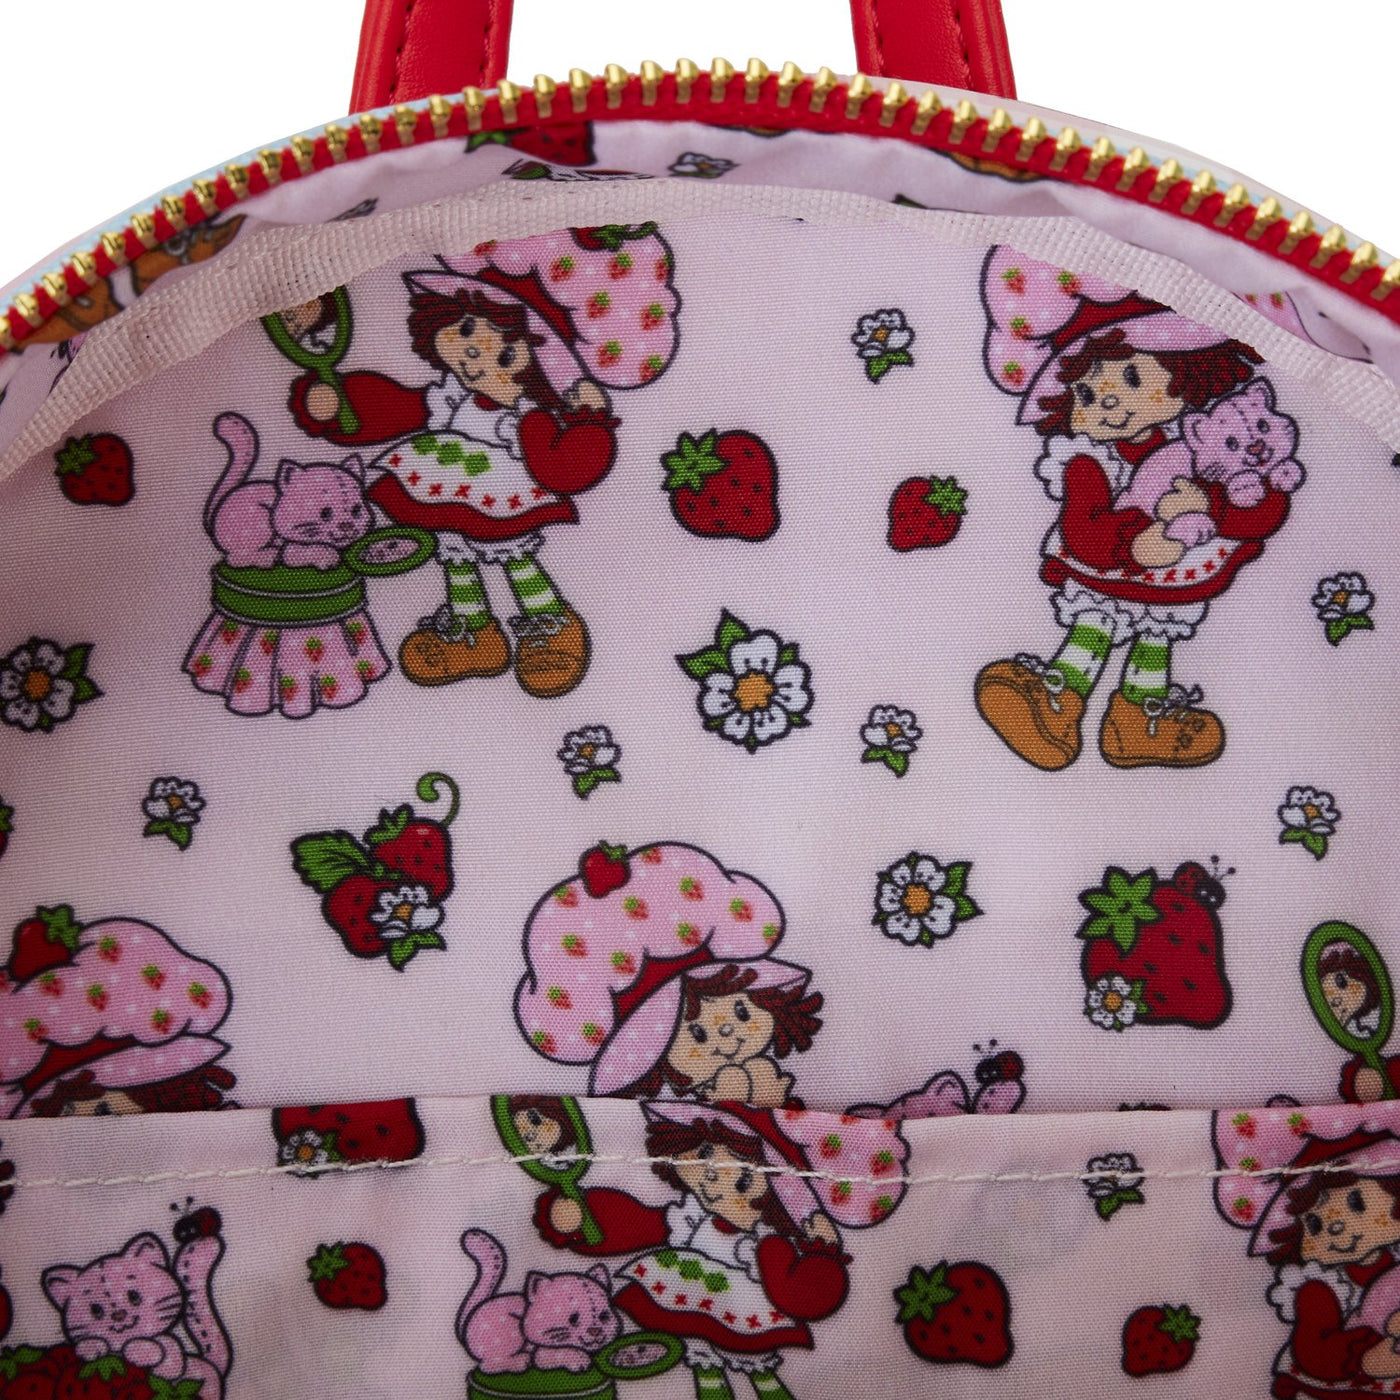 Loungefly Strawberry Shortcake Denim Pocket Mini Backpack - Interior Lining